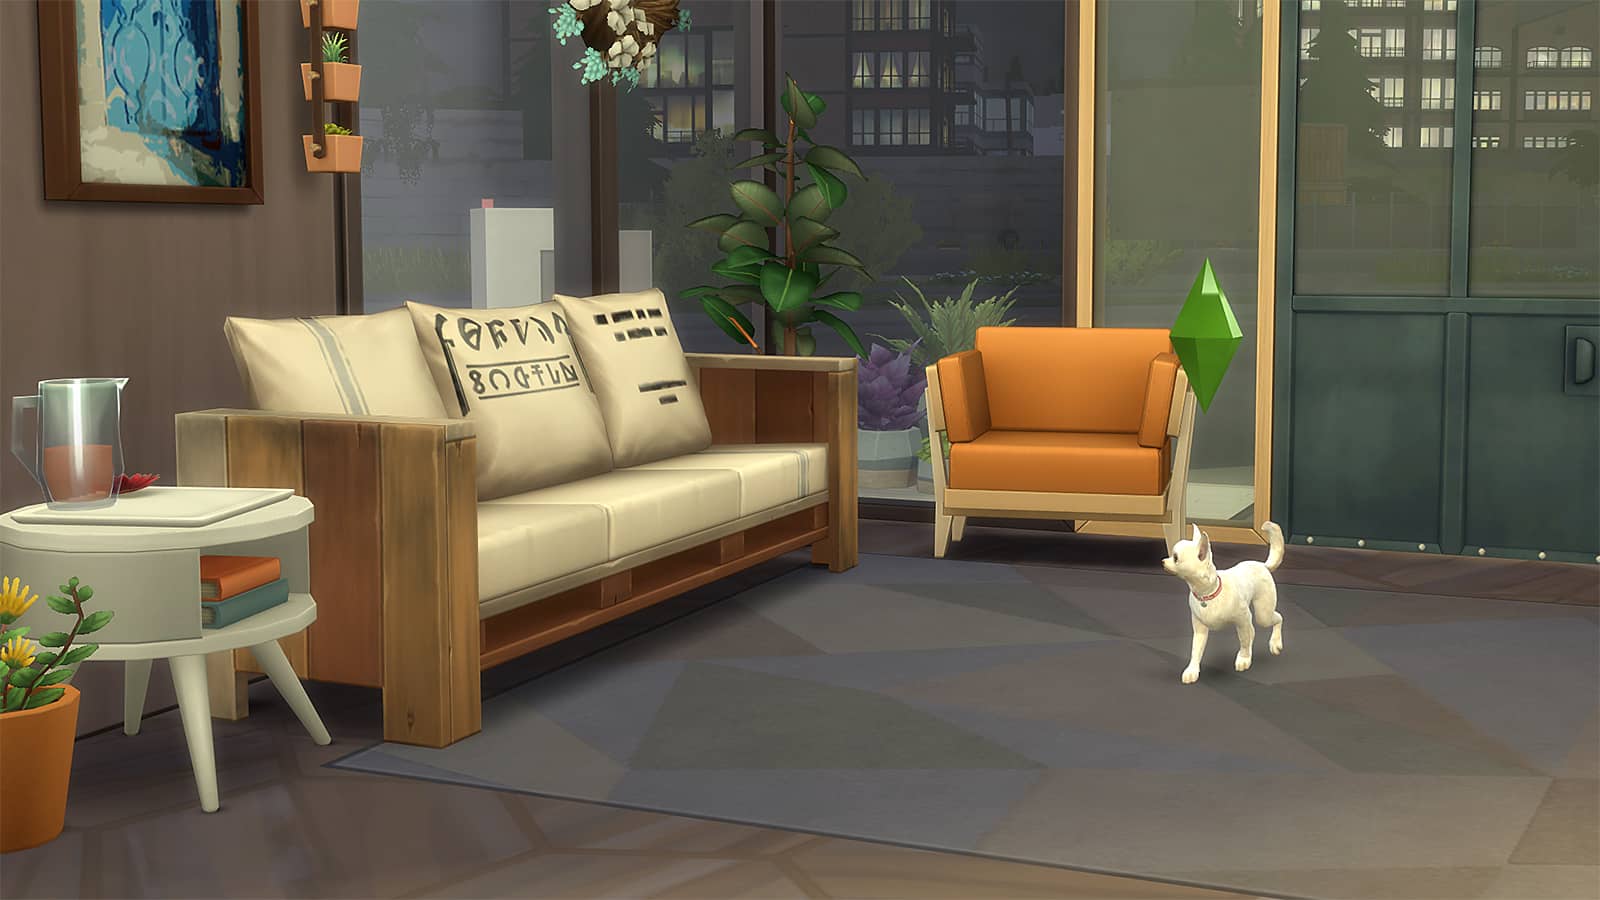 צילום מסך של משחק חיות מחמד הניתן לשחק ב- Sims 4